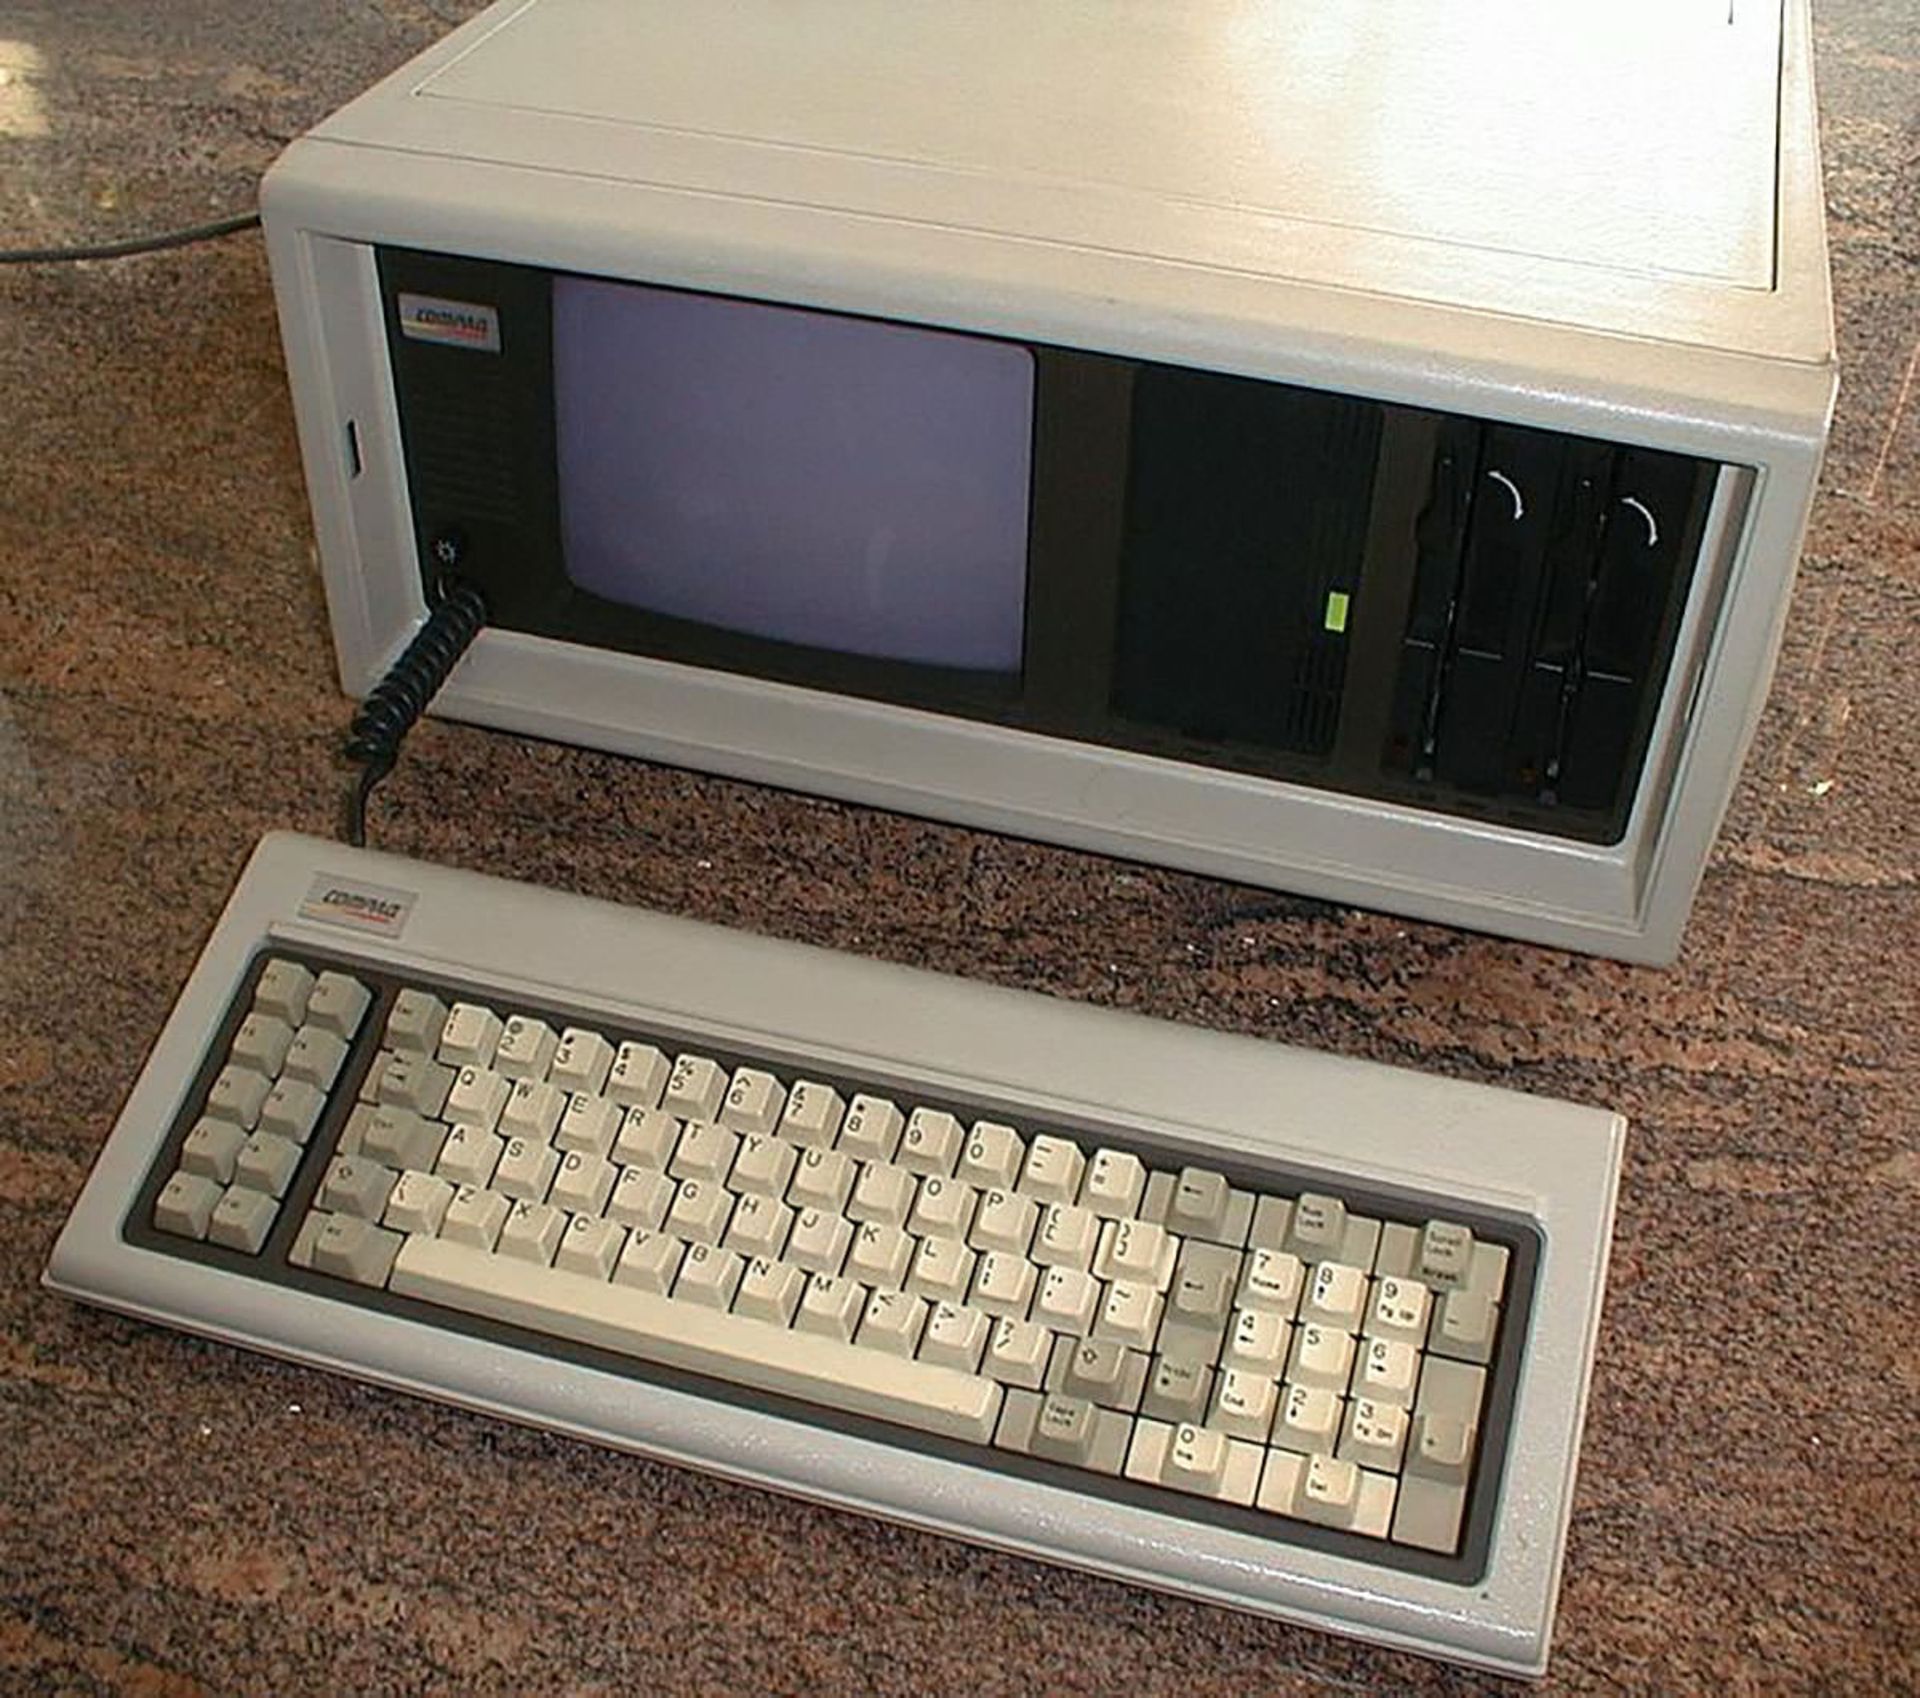 مرجع متخصصين ايران Compaq Portable